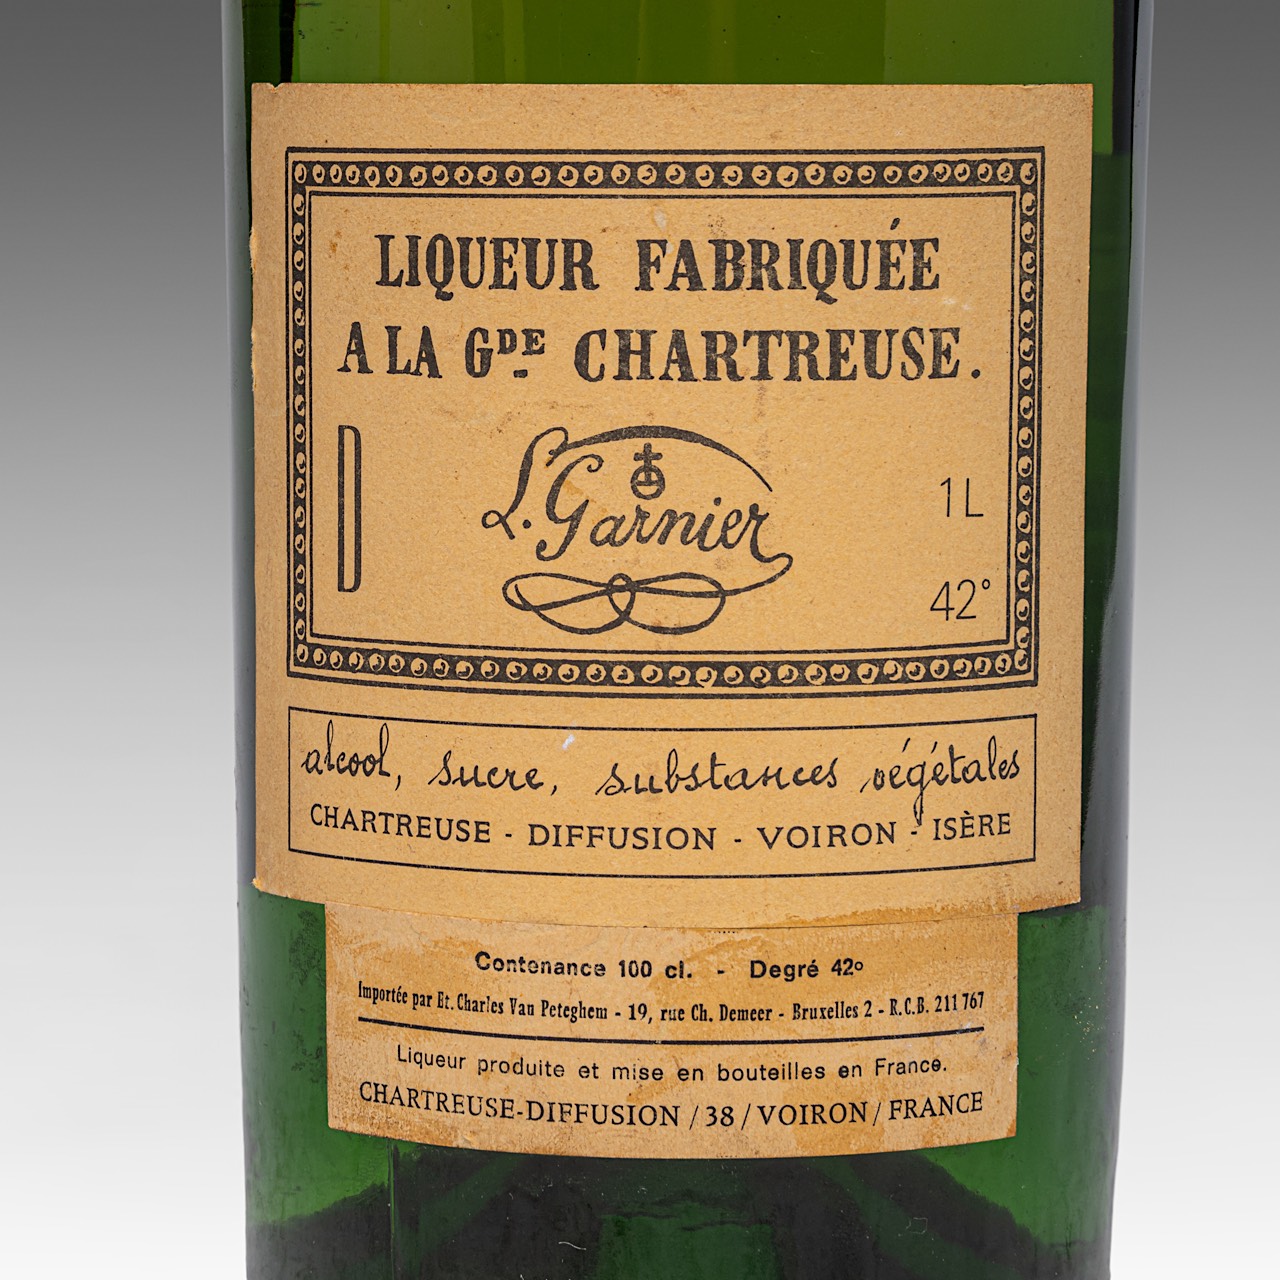 Liqueur Fabriquee a la Grande Chartreuse, L. Garnier, 1964, 1L - Image 5 of 5